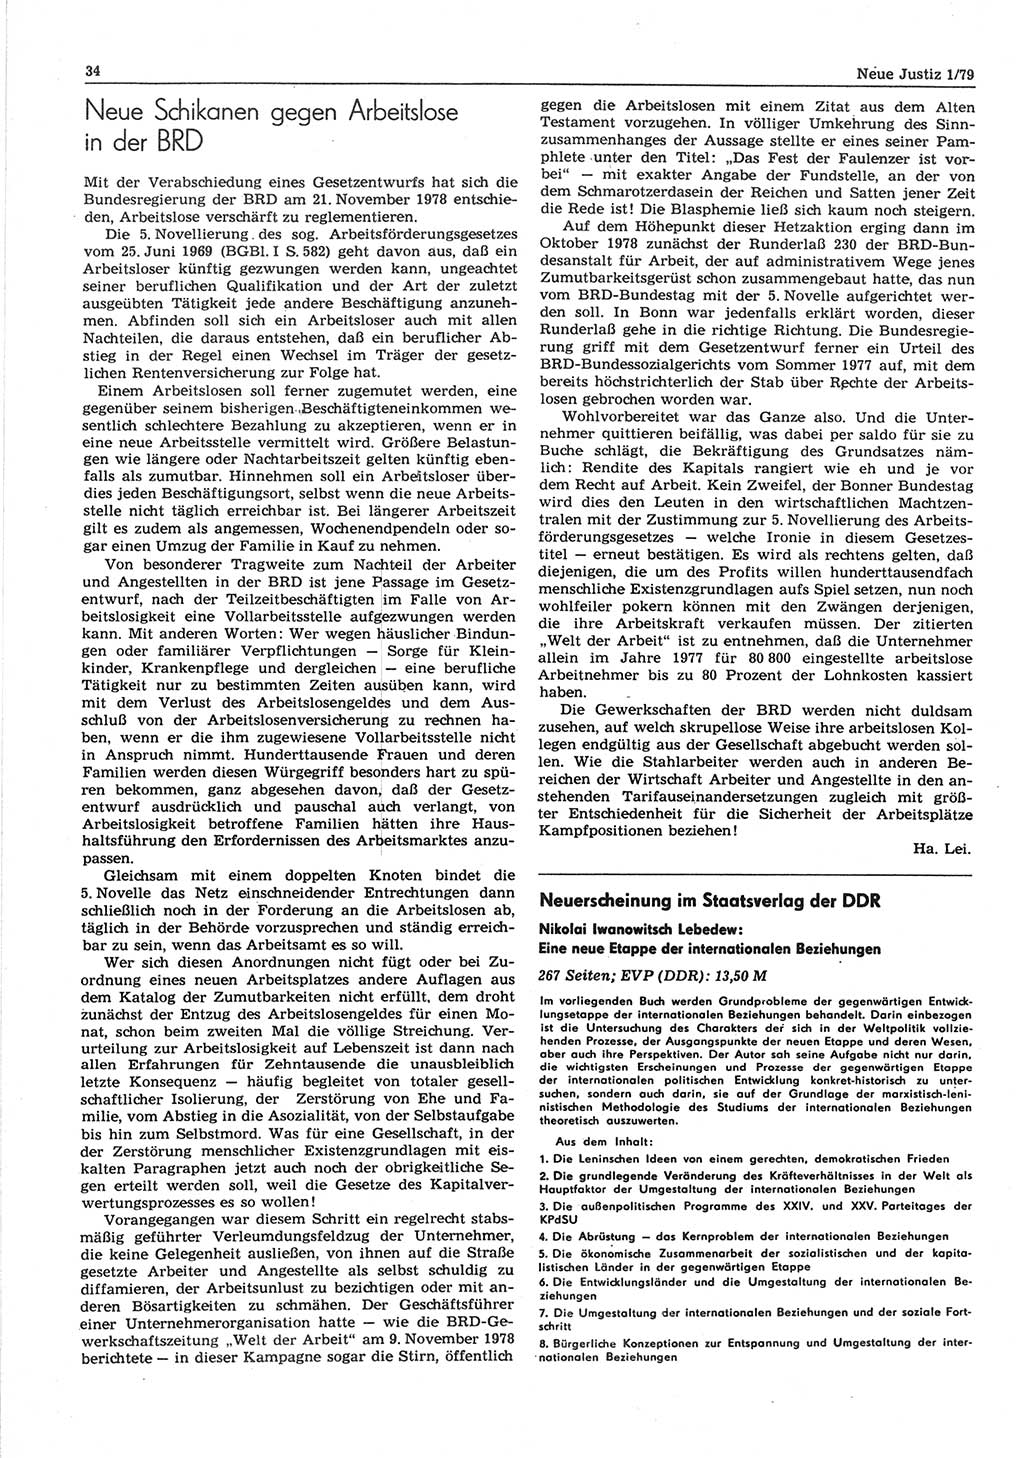 Neue Justiz (NJ), Zeitschrift für sozialistisches Recht und Gesetzlichkeit [Deutsche Demokratische Republik (DDR)], 33. Jahrgang 1979, Seite 34 (NJ DDR 1979, S. 34)